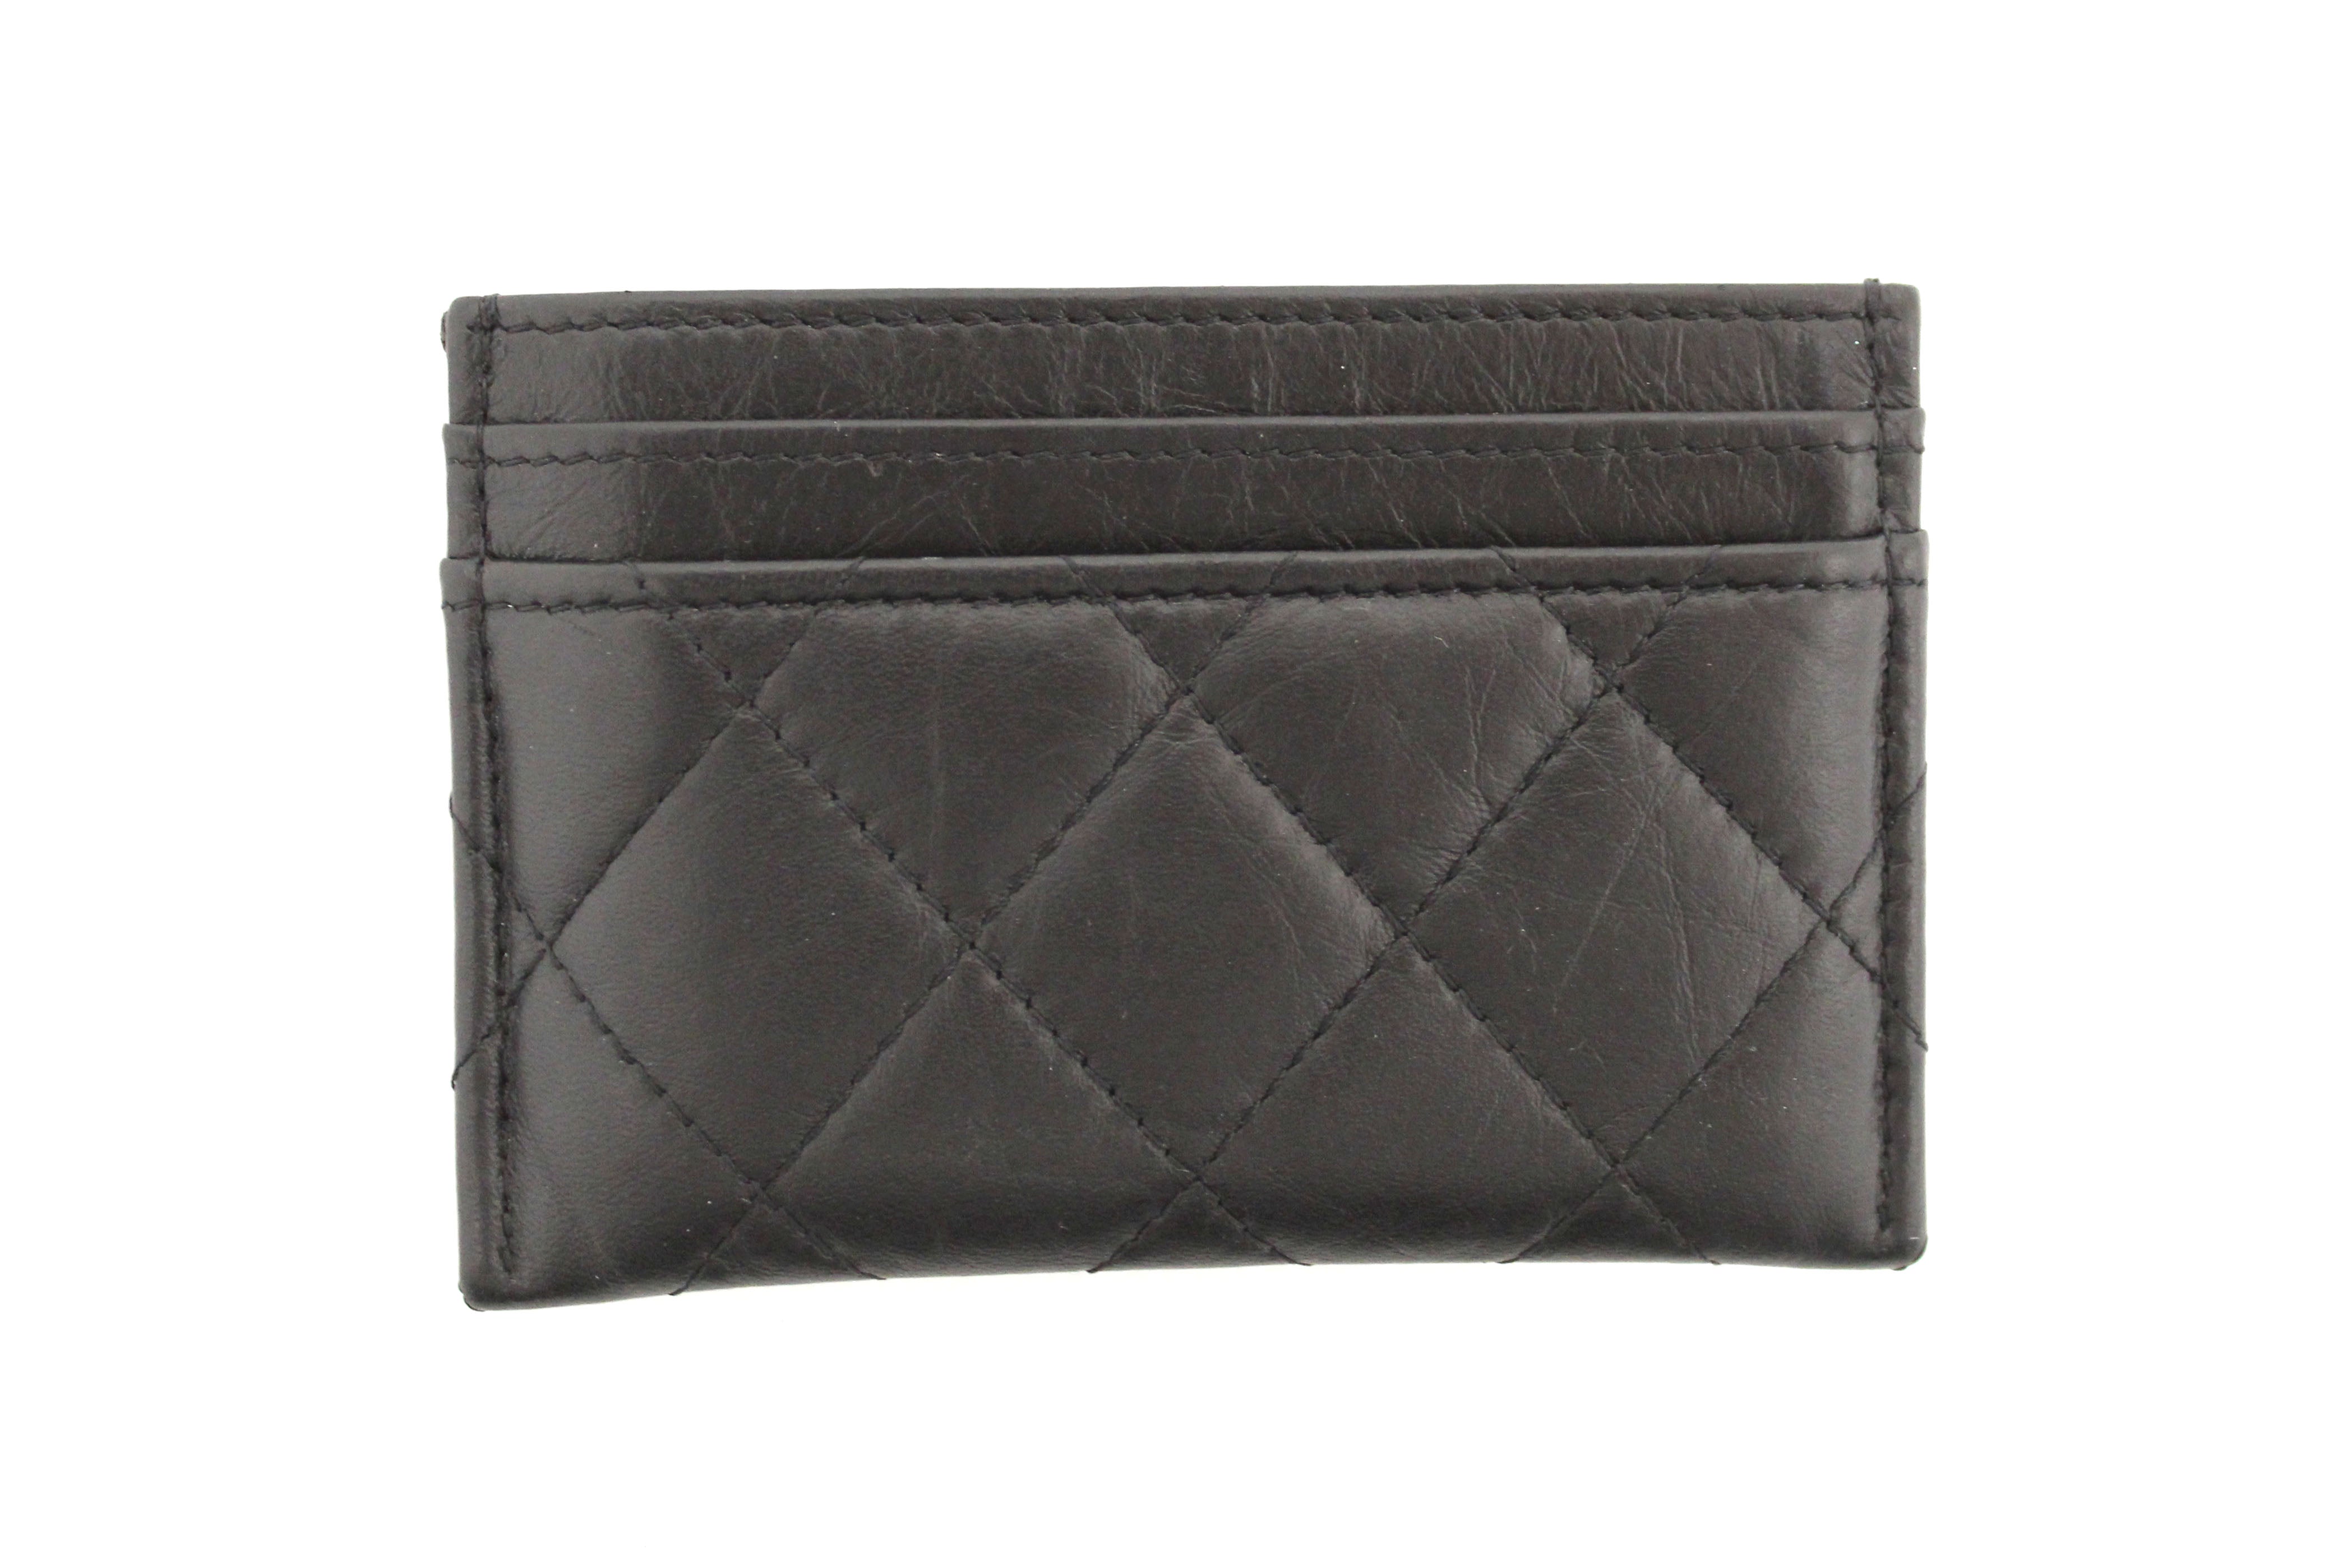 Chanel Black Logo Slim Card Holder Case Wallet Bag – Boutique Patina